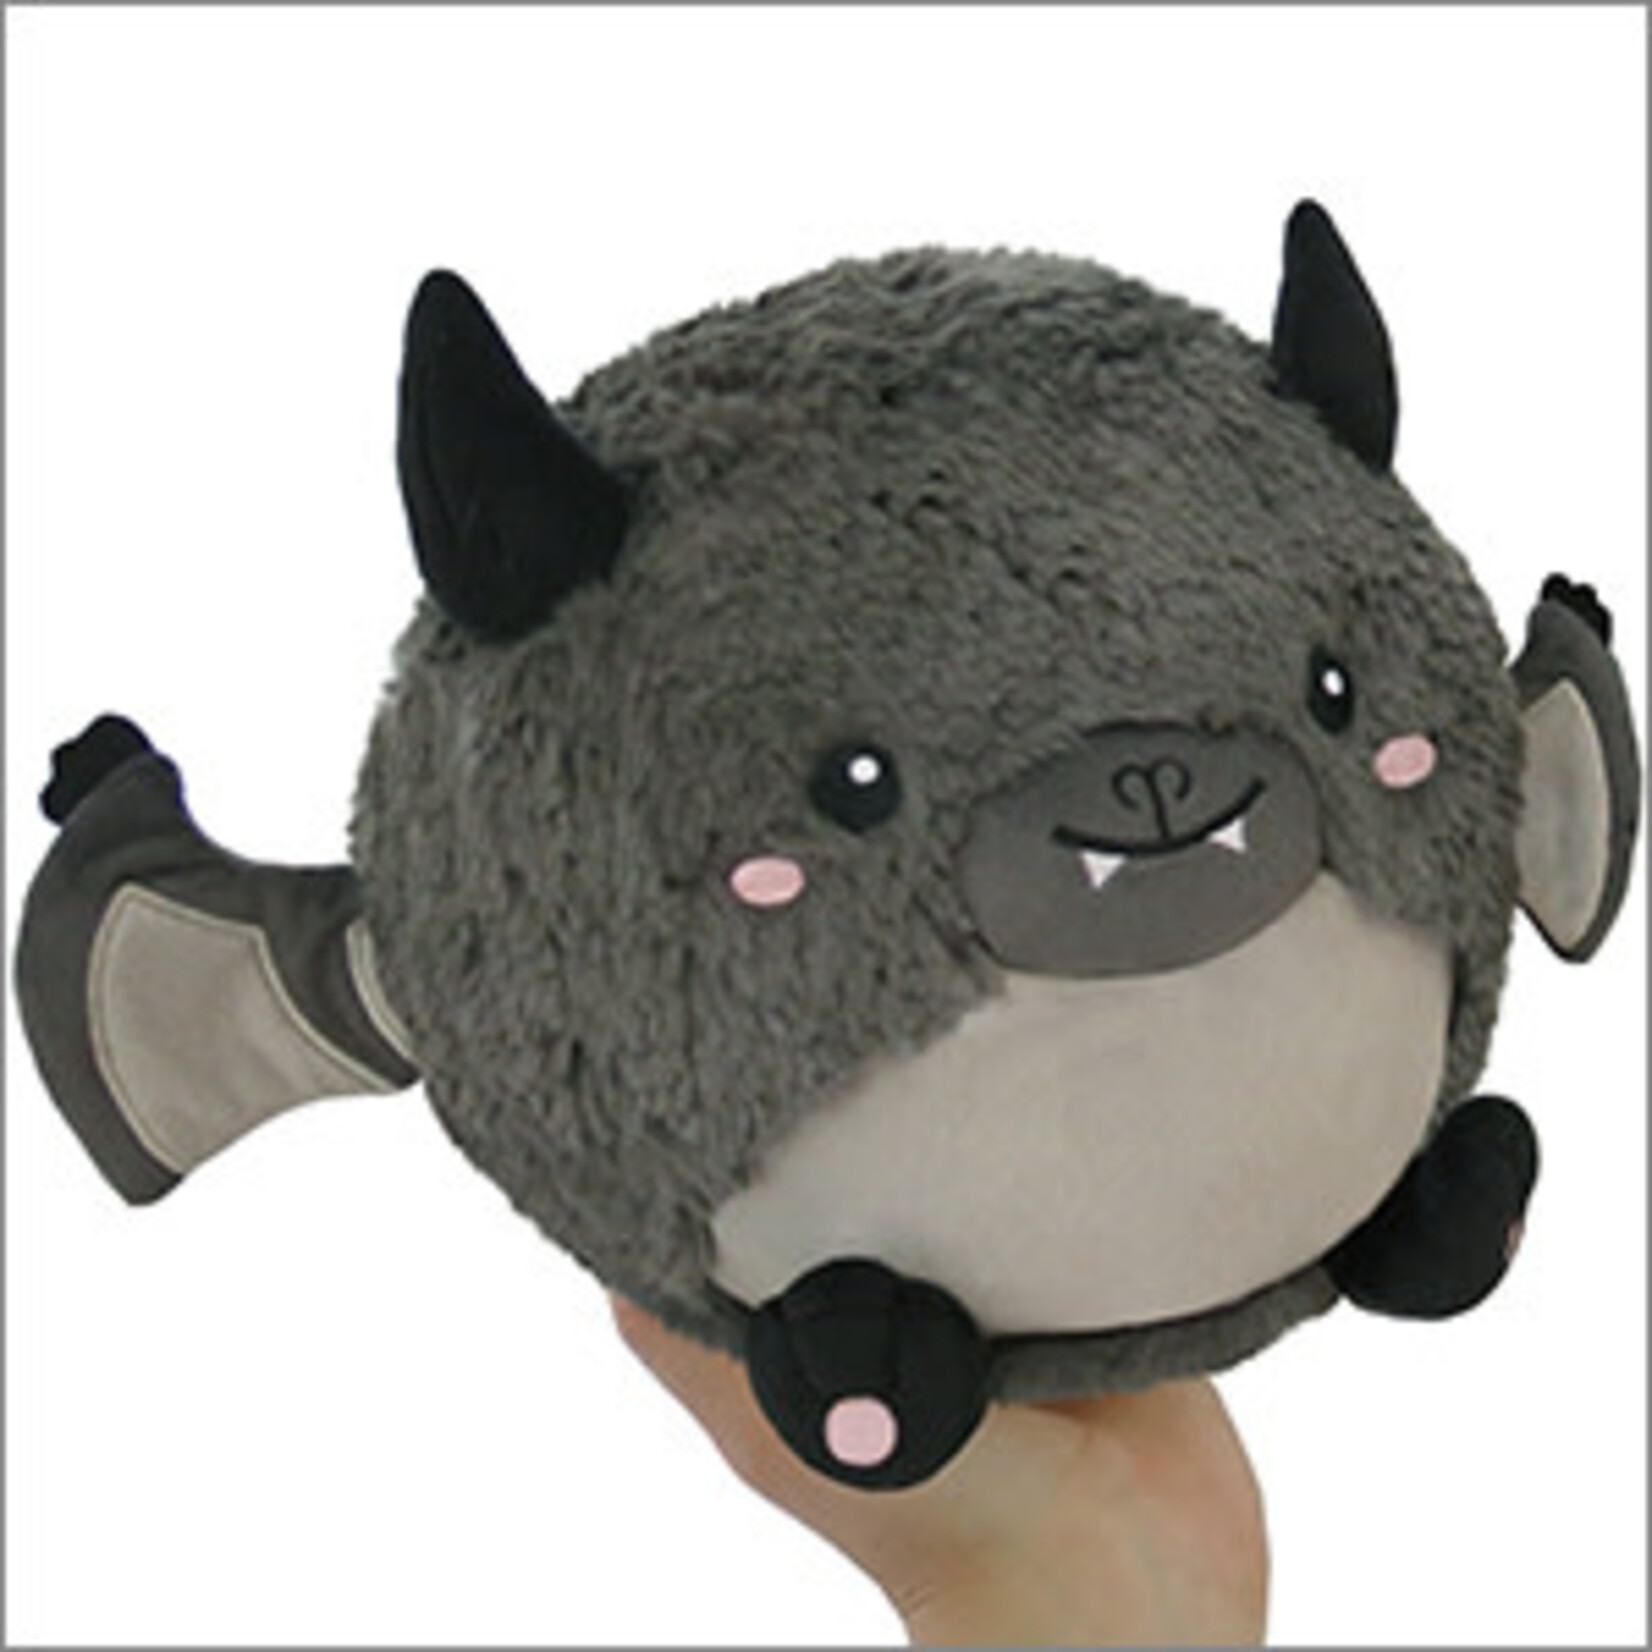 squishable Mini Happy Bat Squishable 7"